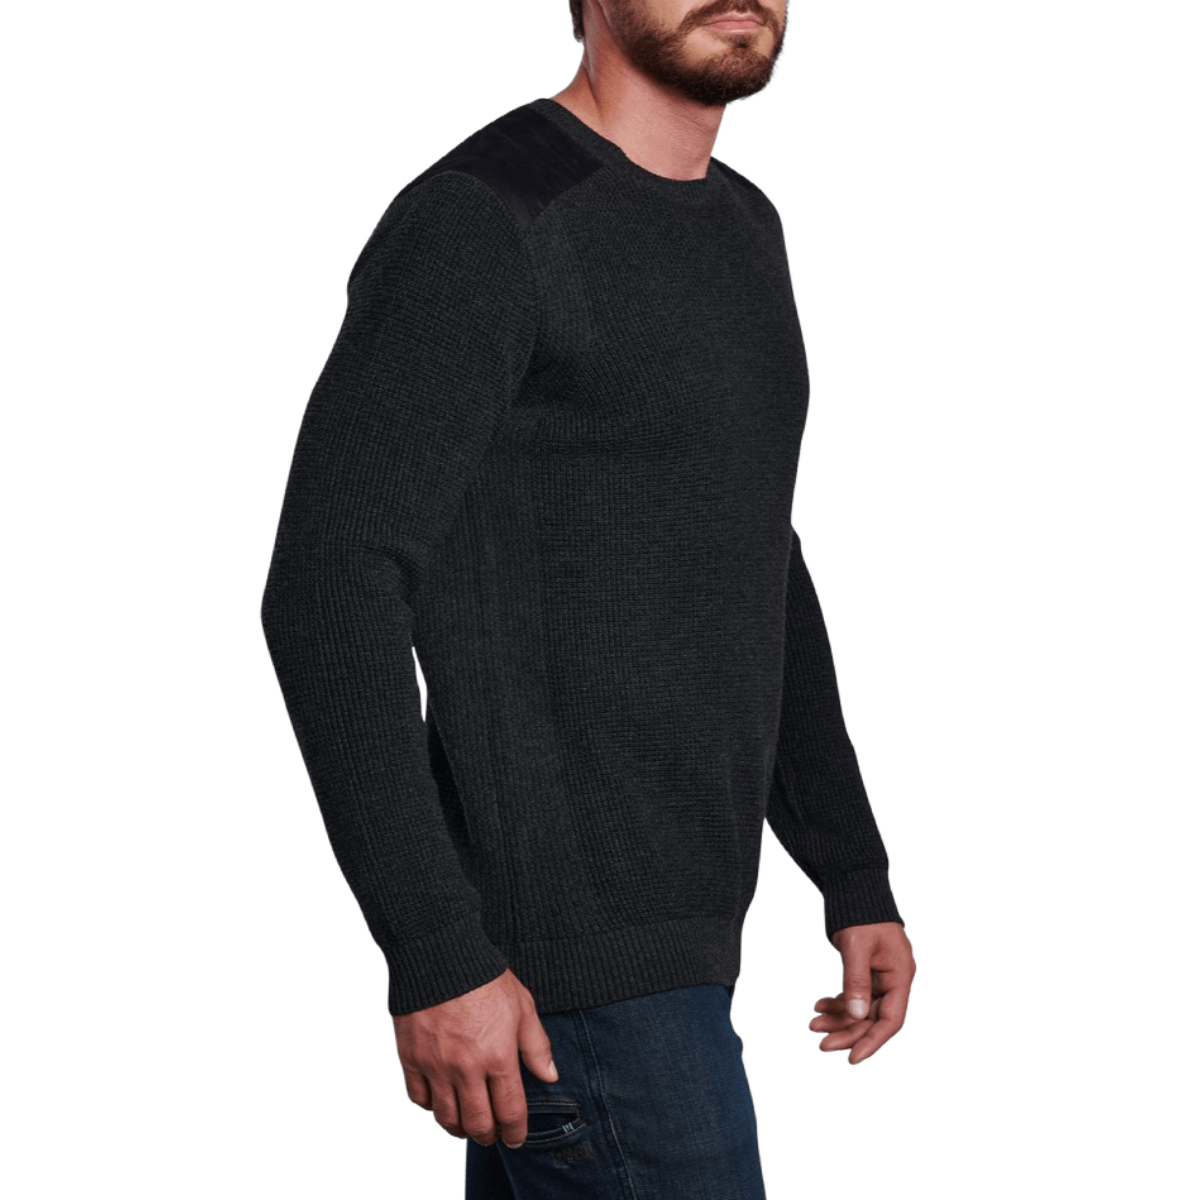 KÜHL Evader Sweater - Men's - Bobwards.com